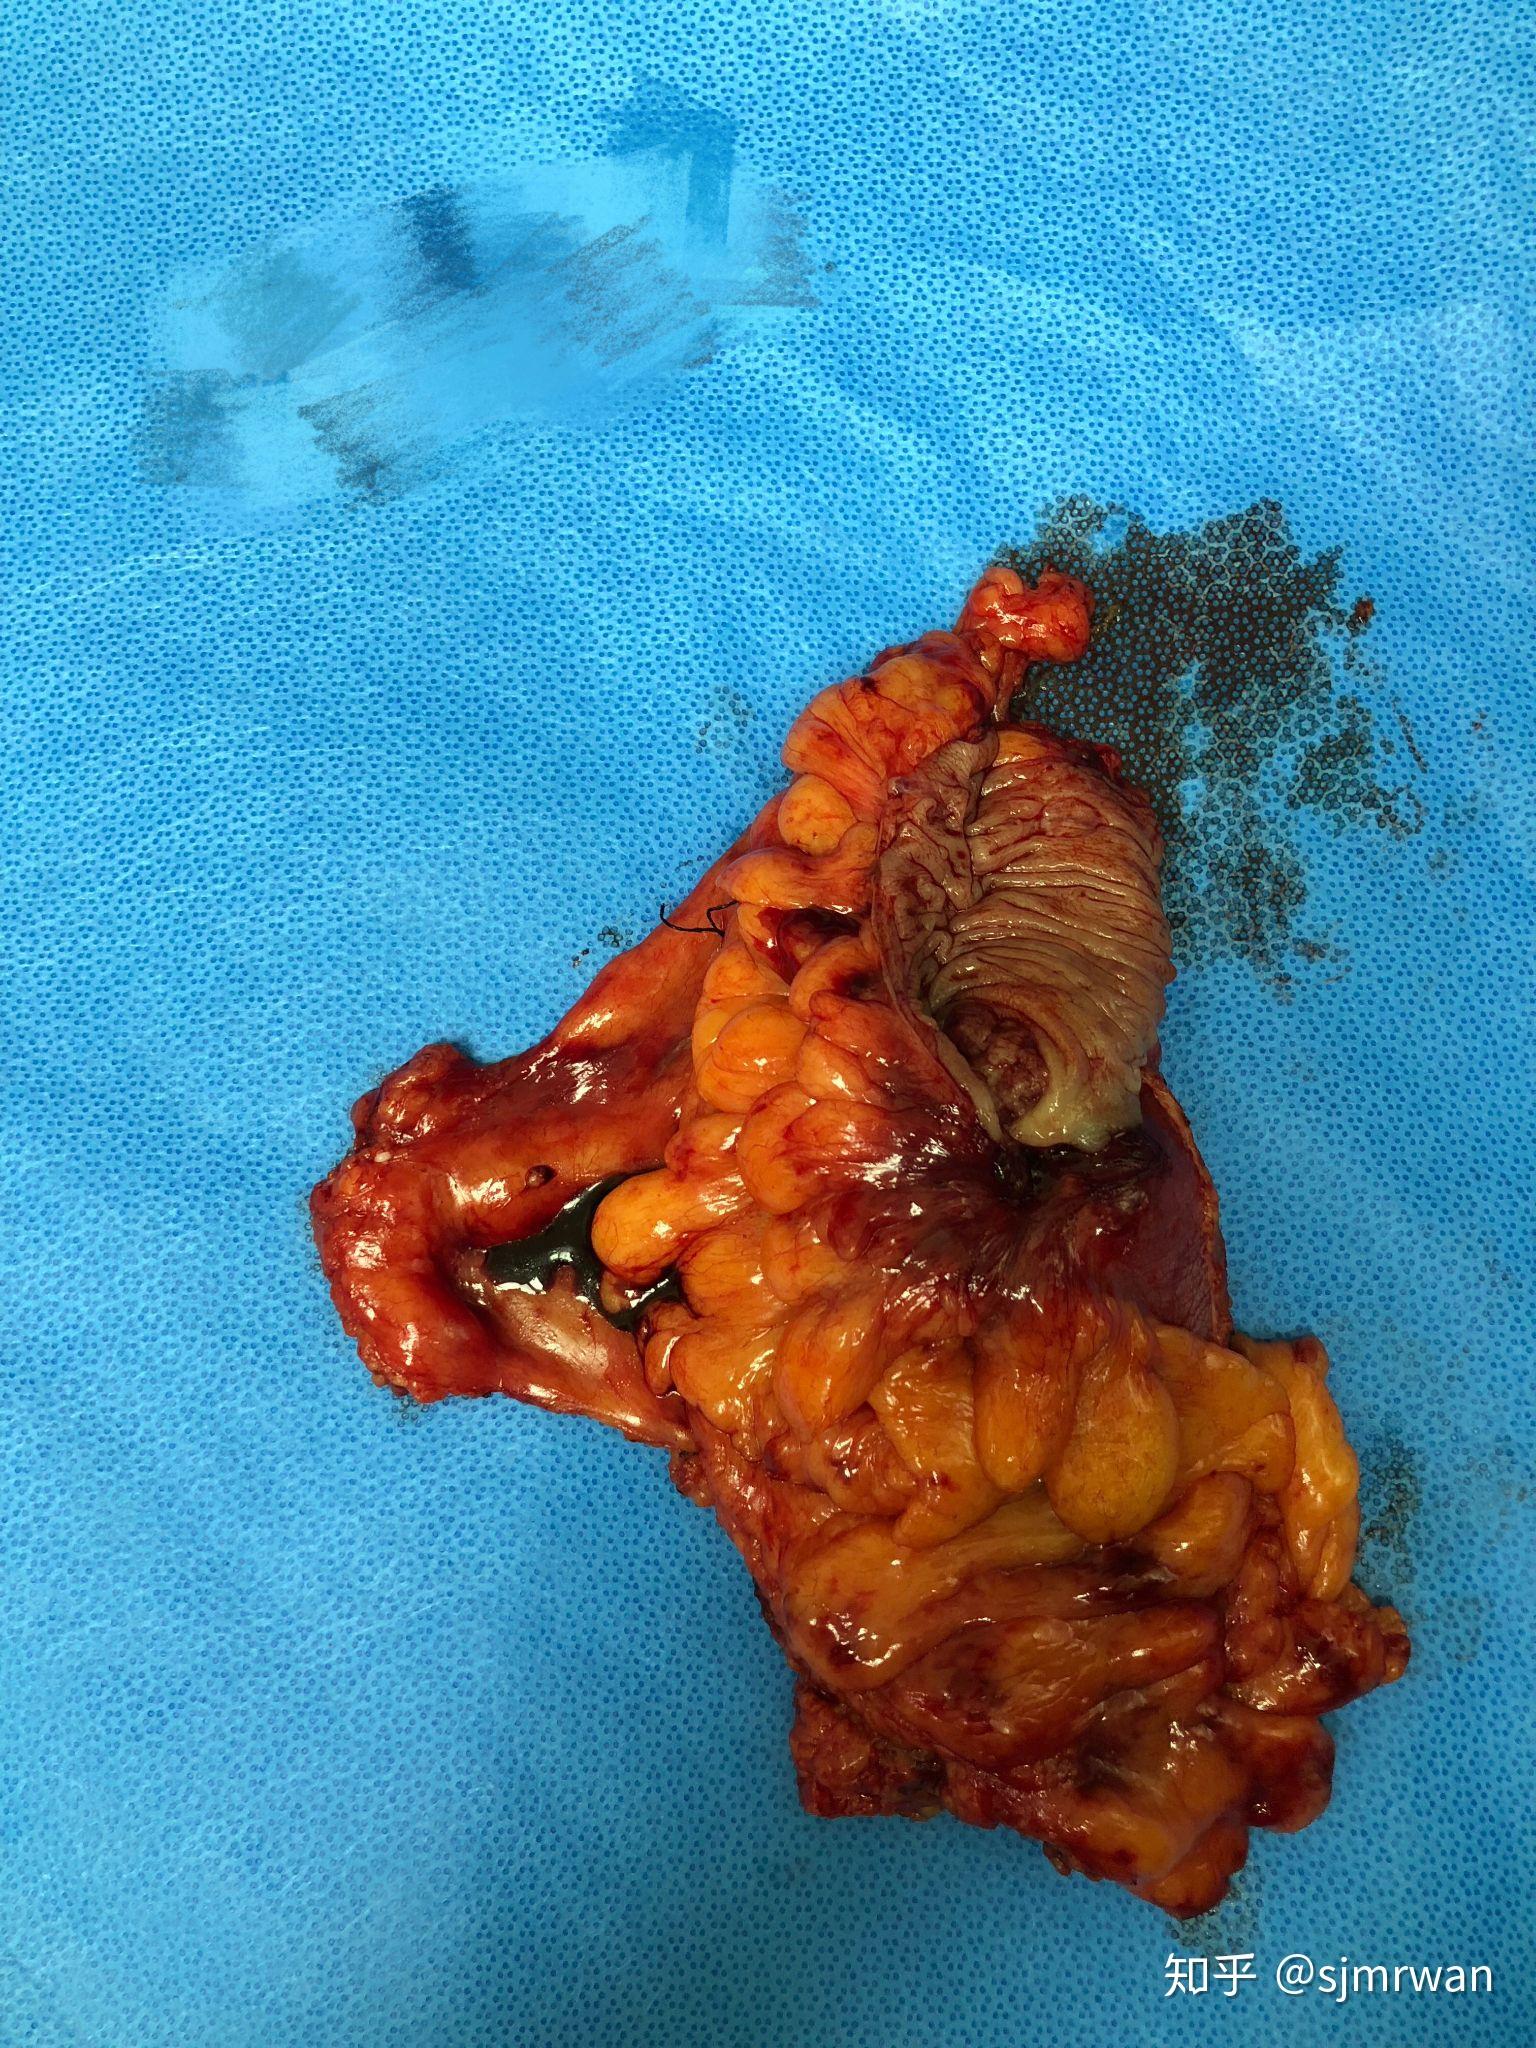 降结肠肿瘤图片